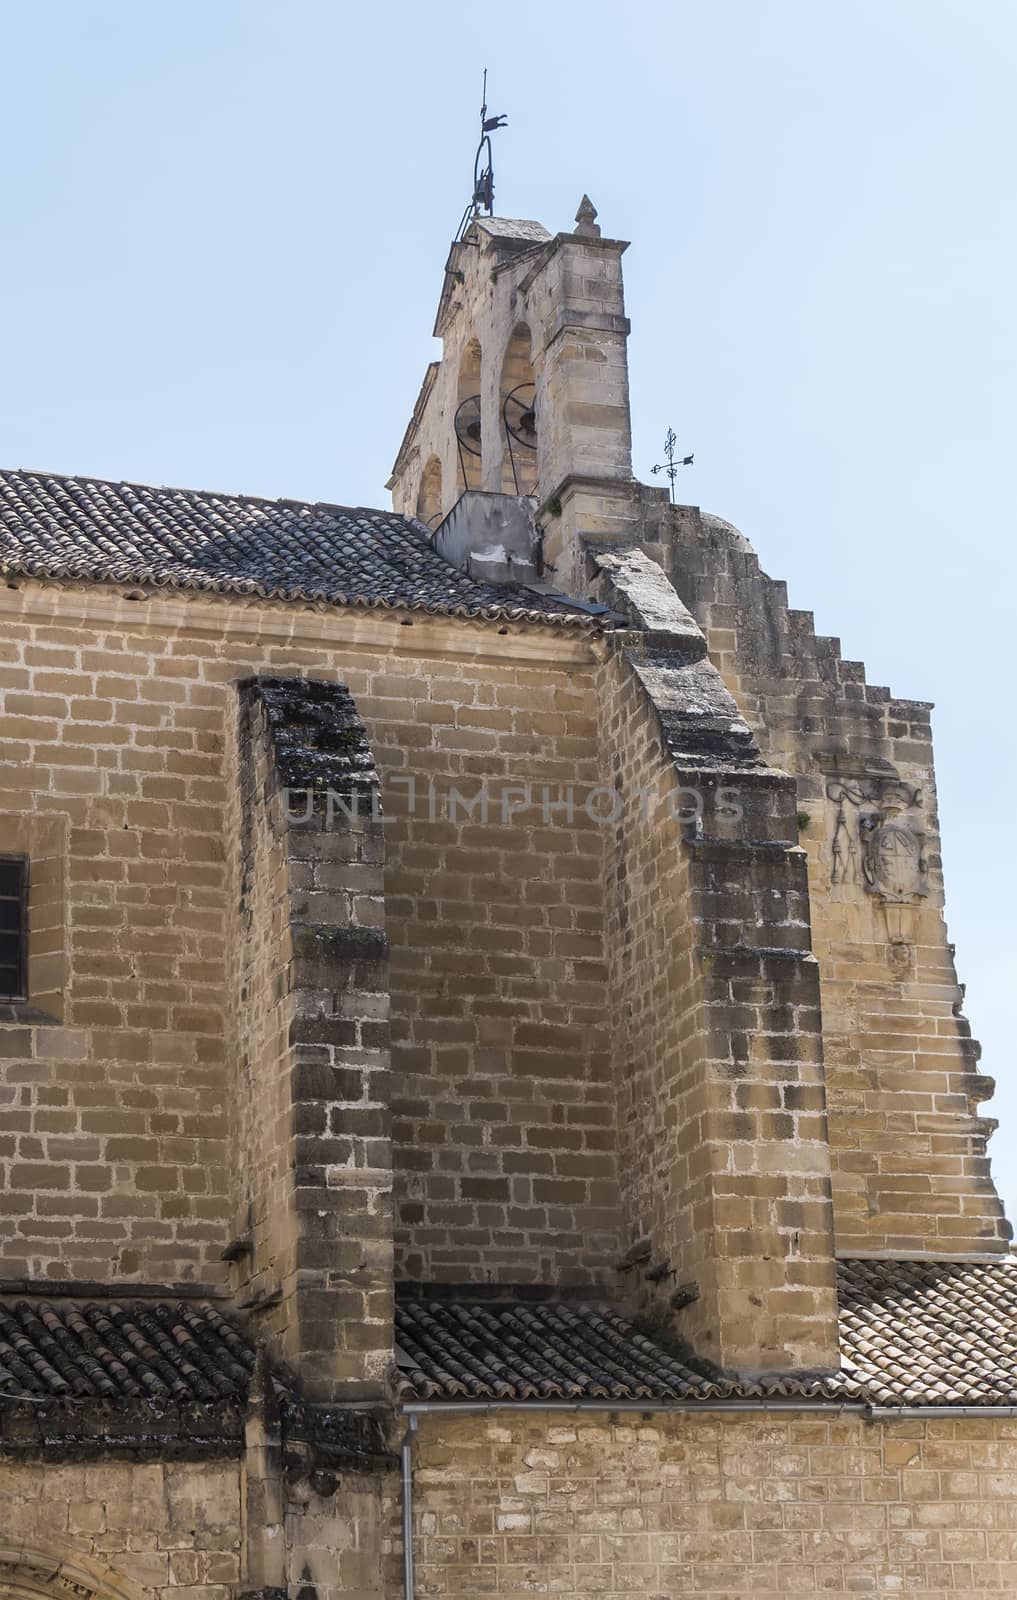 Parish of San Isidoro, Ubeda, Jaen, Spain by max8xam